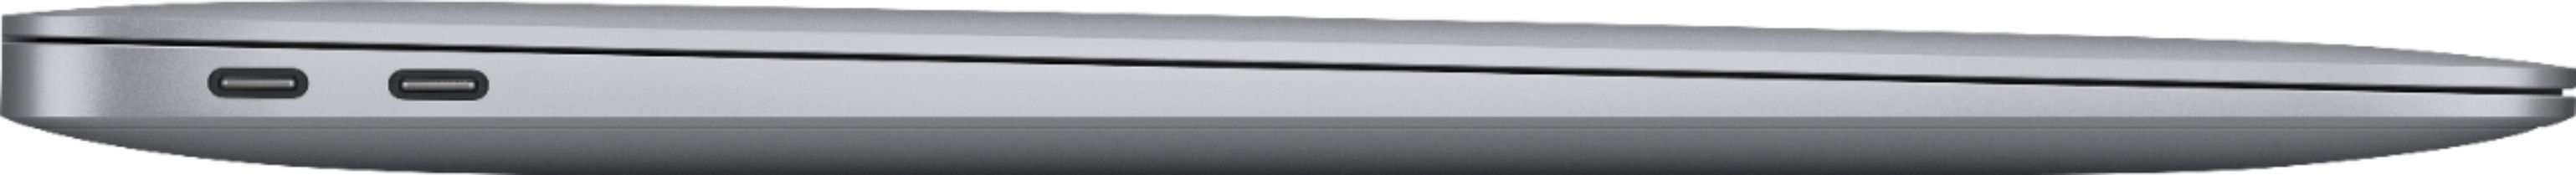 Bild von MacBook Air M1 2020 13,3" 8 GB RAM 512 GB SSD 8-Core GPU space grau